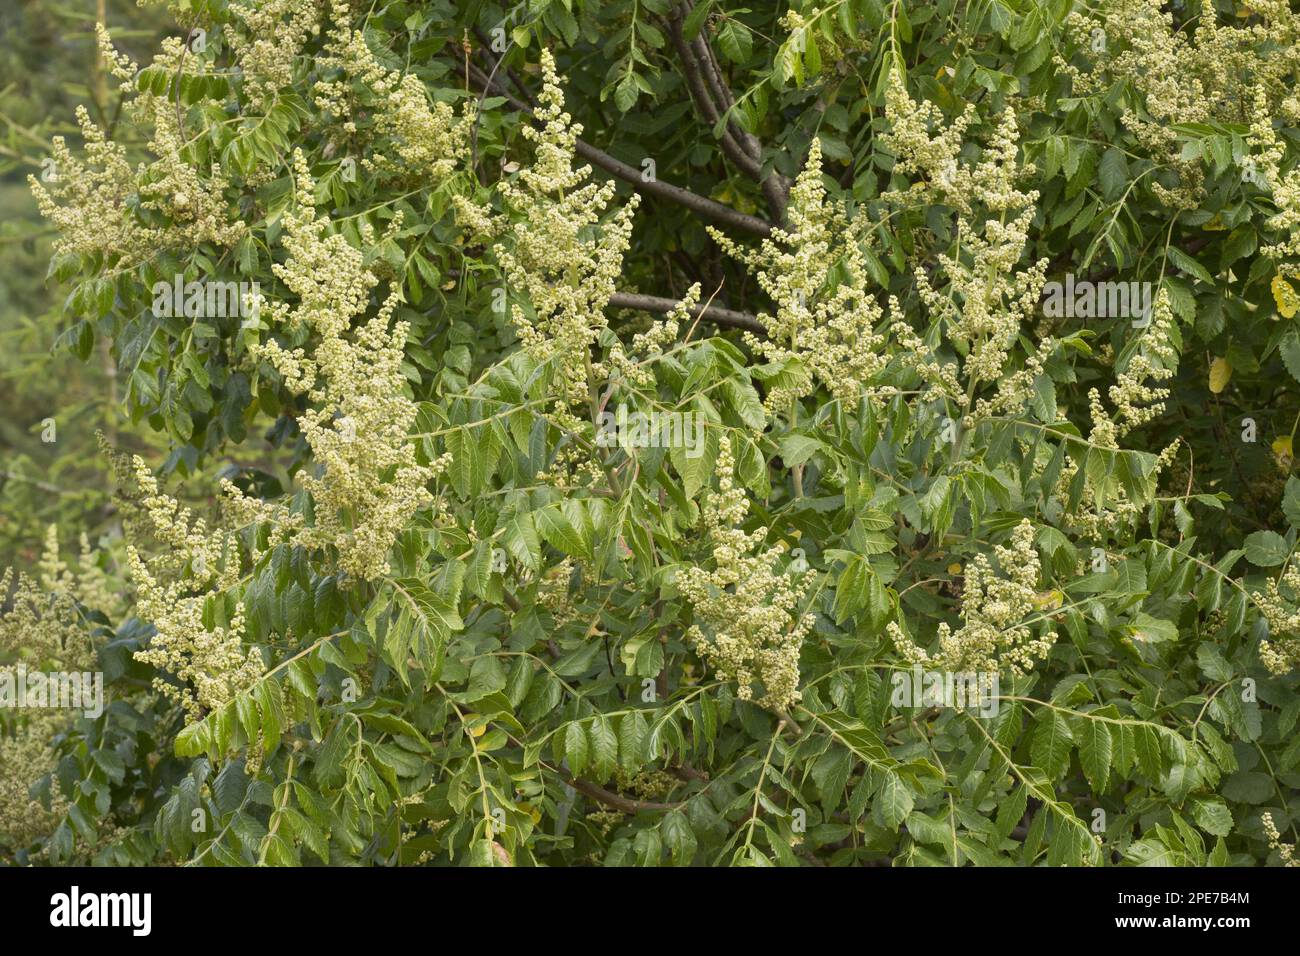 Elm-leaved Sumach (Rhus coriaria) flowering, Pontic Mountains, Anatolia, Turkey Stock Photo